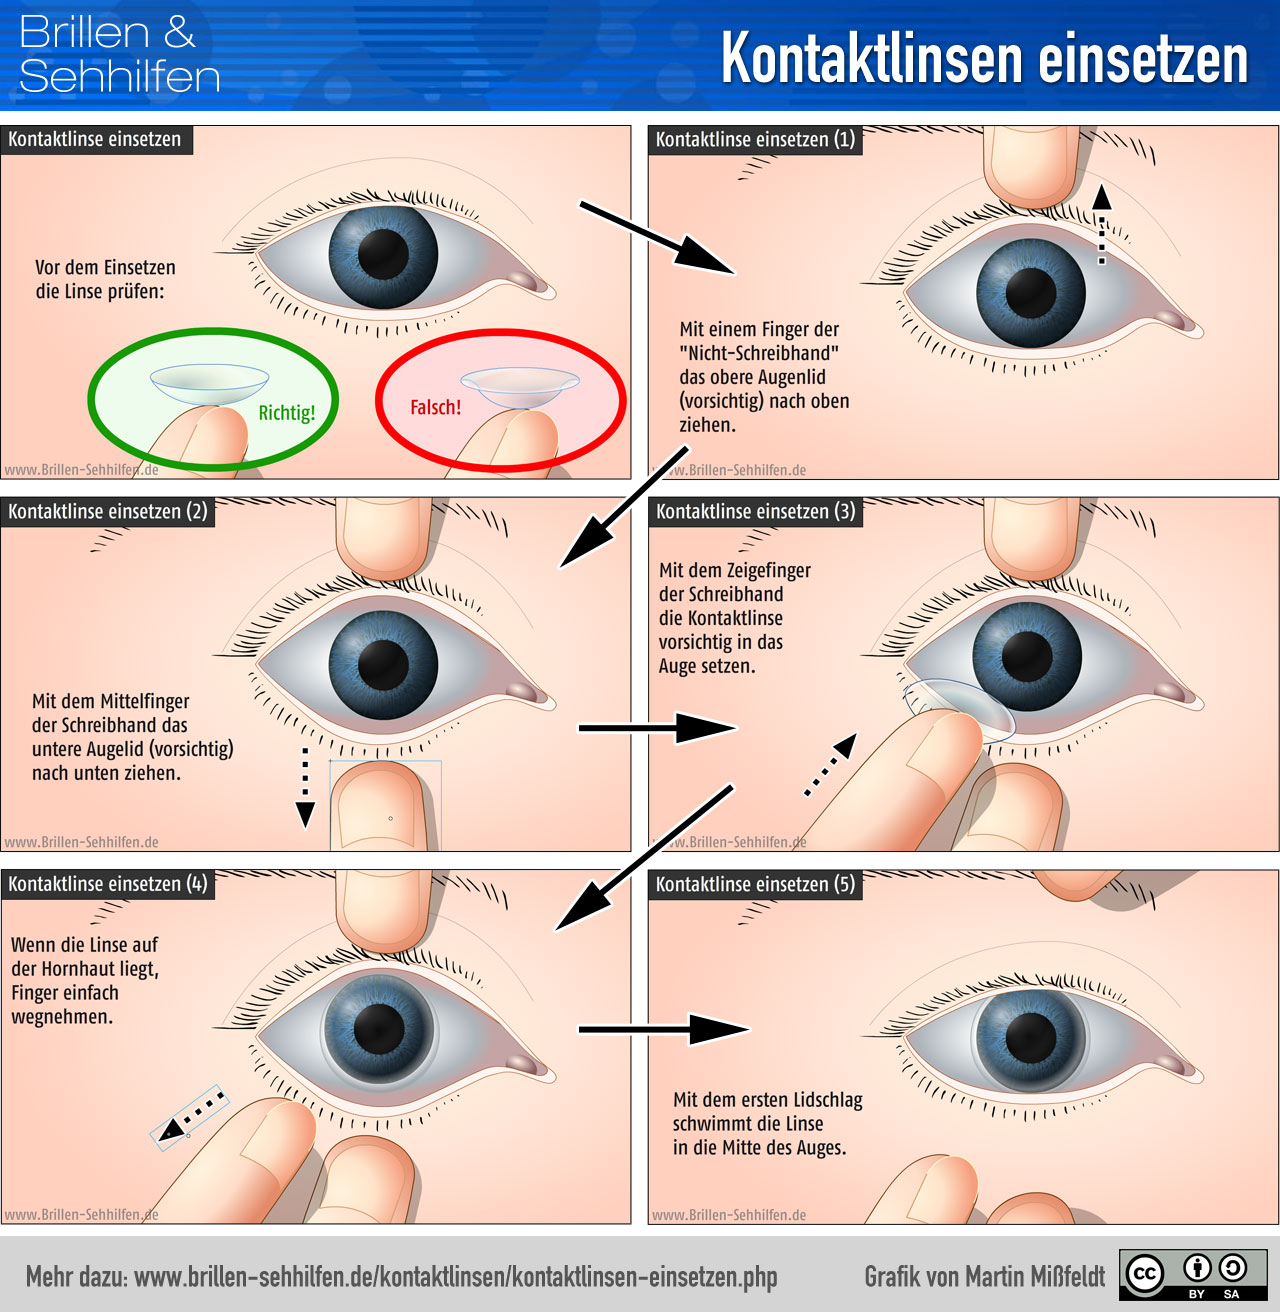 https://www.brillen-sehhilfen.de/kontaktlinsen/images/kontaktlinsen-einsetzen-infografik.jpg